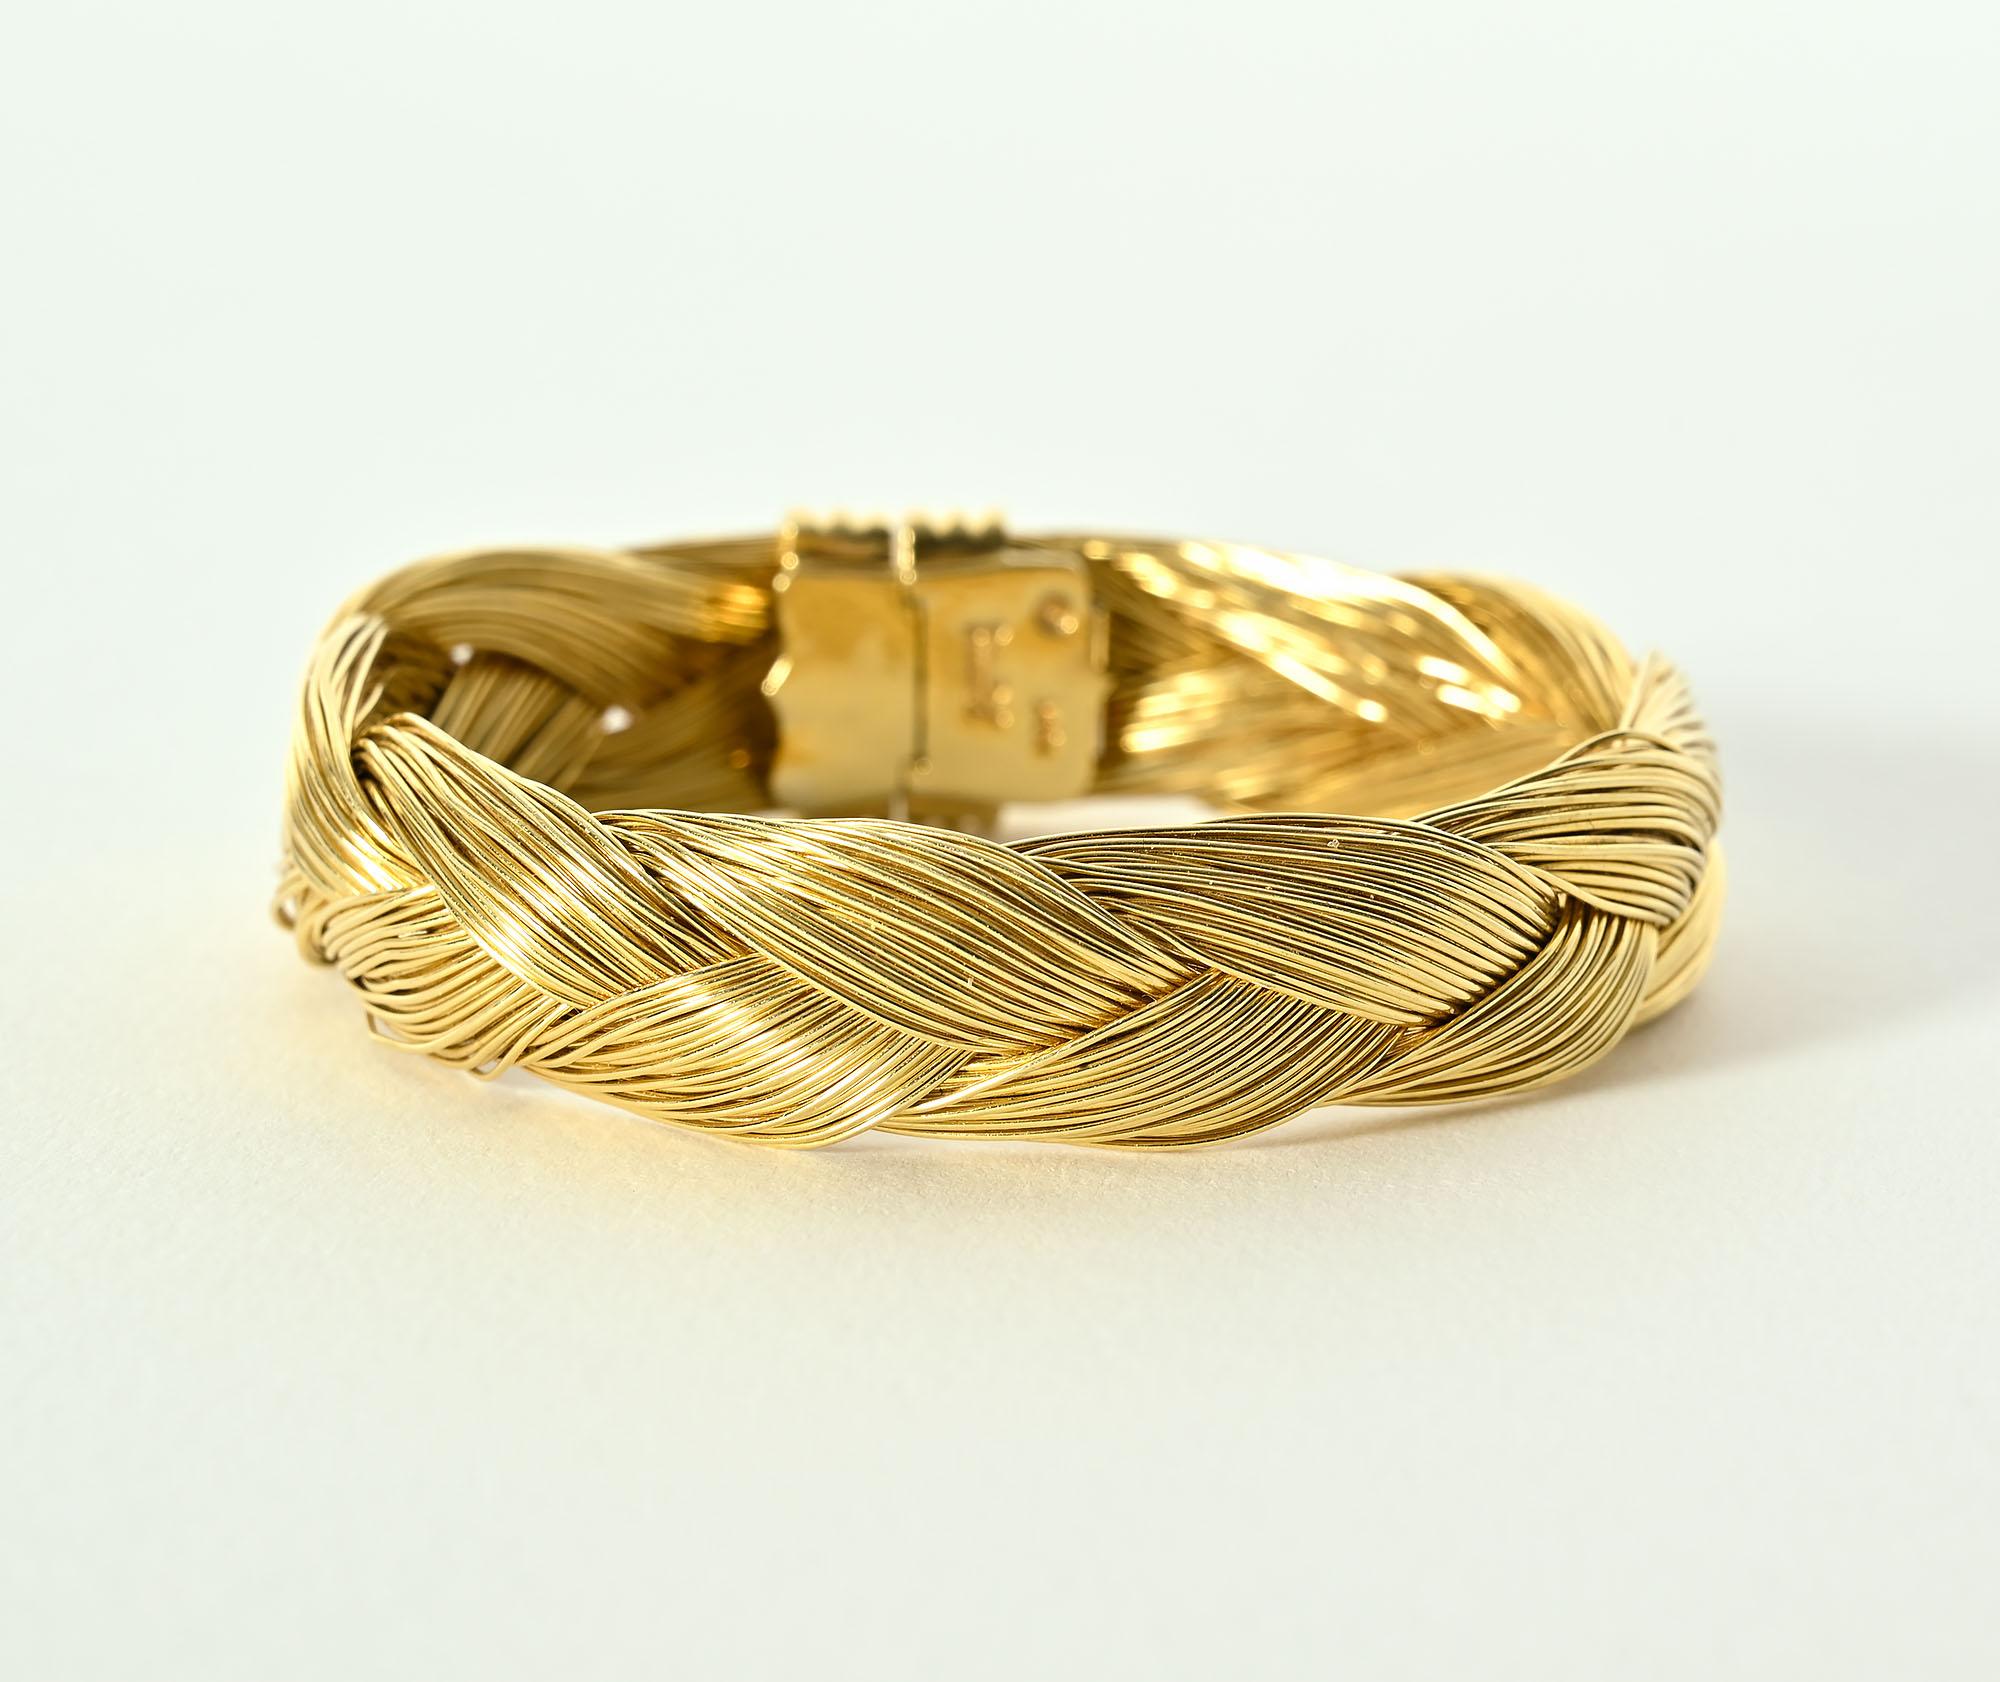 Geflochtenes 18-karätiges Goldarmband des amerikanischen Designers Henry Dunay. Das Armband ist einen halben Zoll groß.
Im geschlossenen Zustand beträgt der Innendurchmesser 2 1/8 Zoll.
Das Armband hat einen Zierverschluss, der entweder vorne